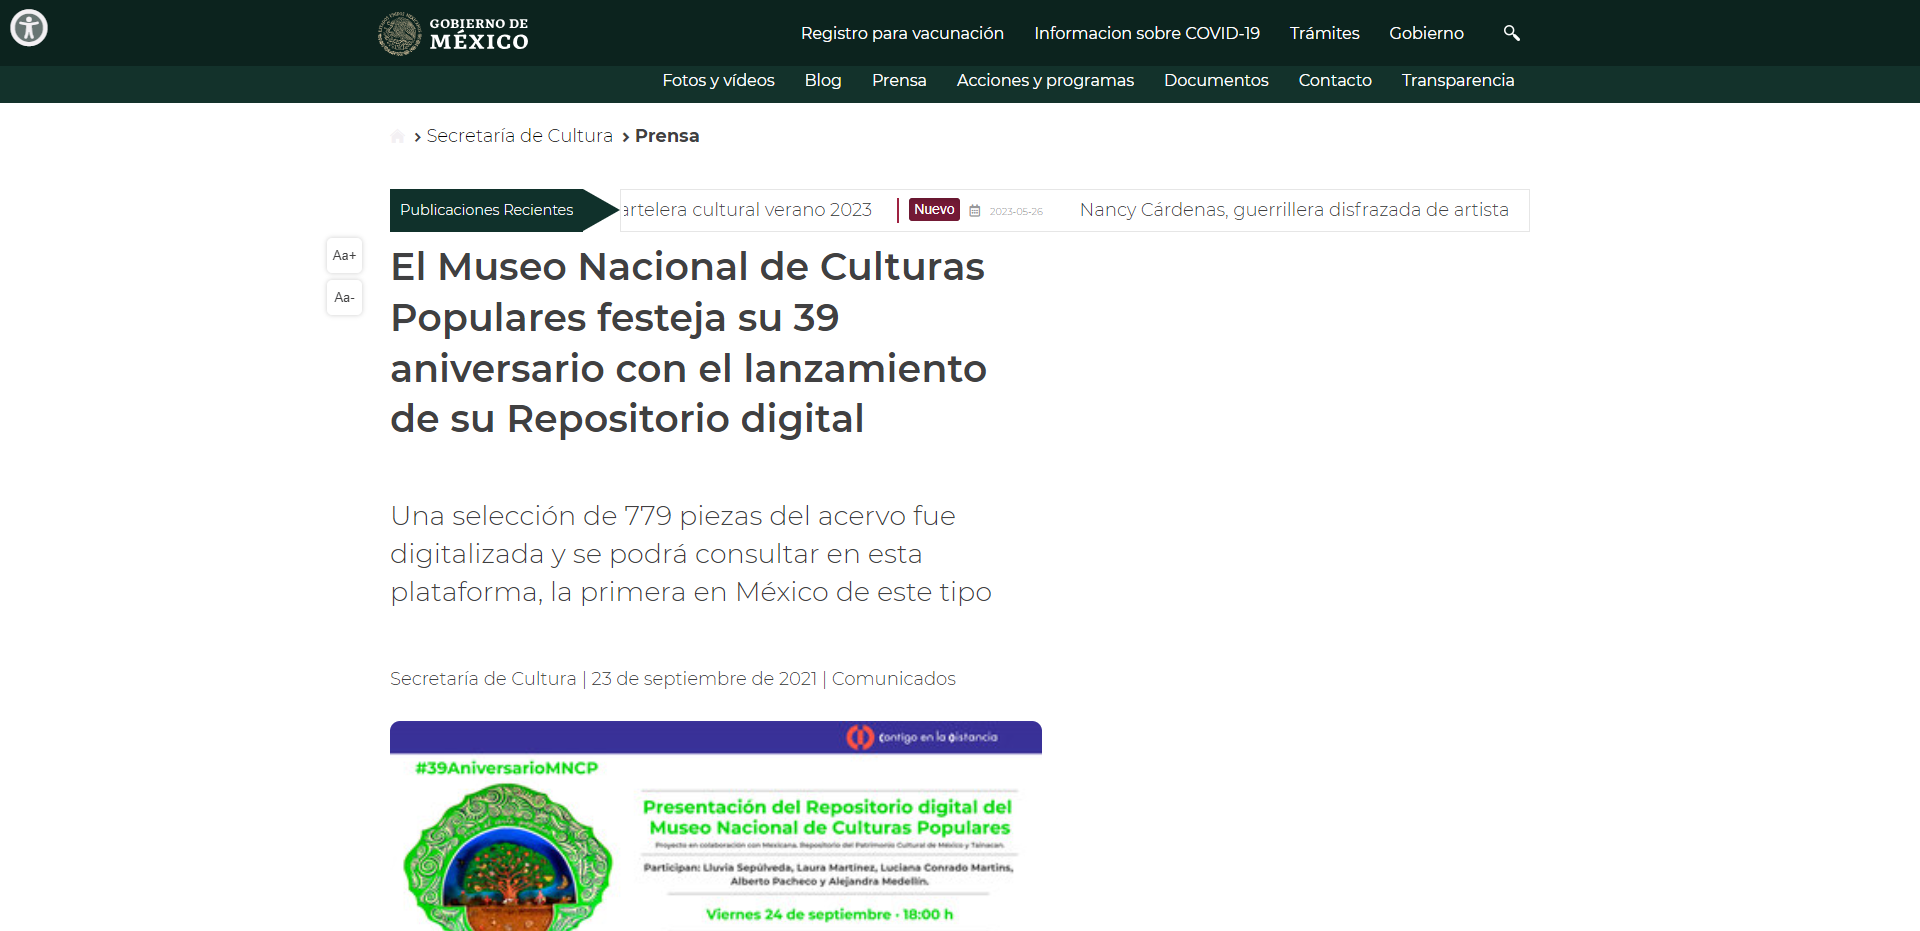 Entrada: El Museo Nacional de Culturas Populares festeja su 39 aniversario con el lanzamiento de su Repositorio digital